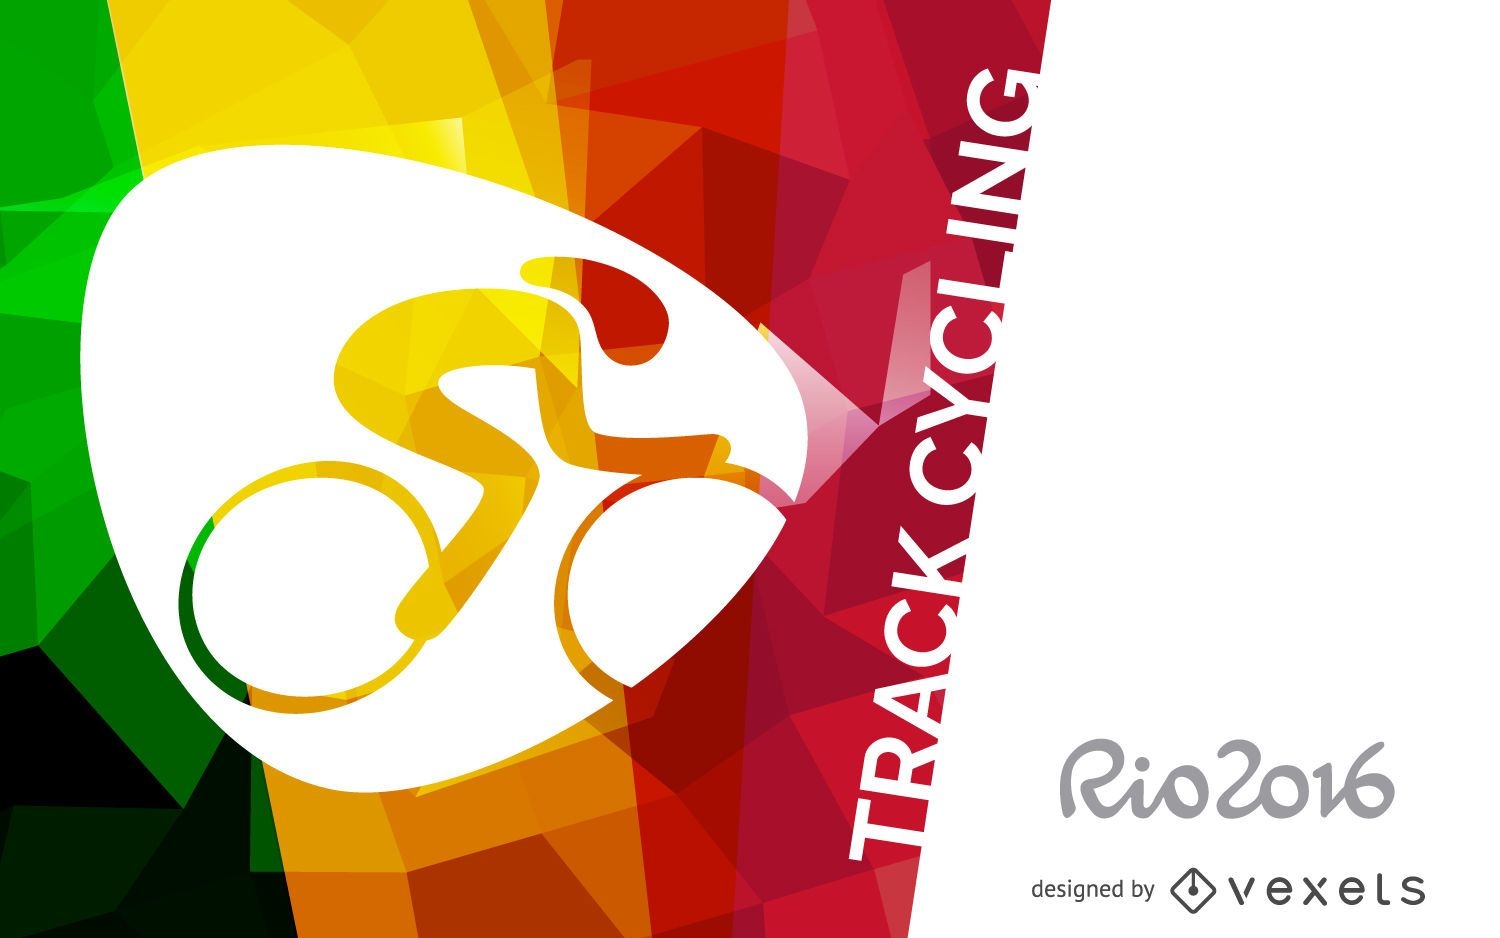 Faixa de ciclismo de pista Rio 2016